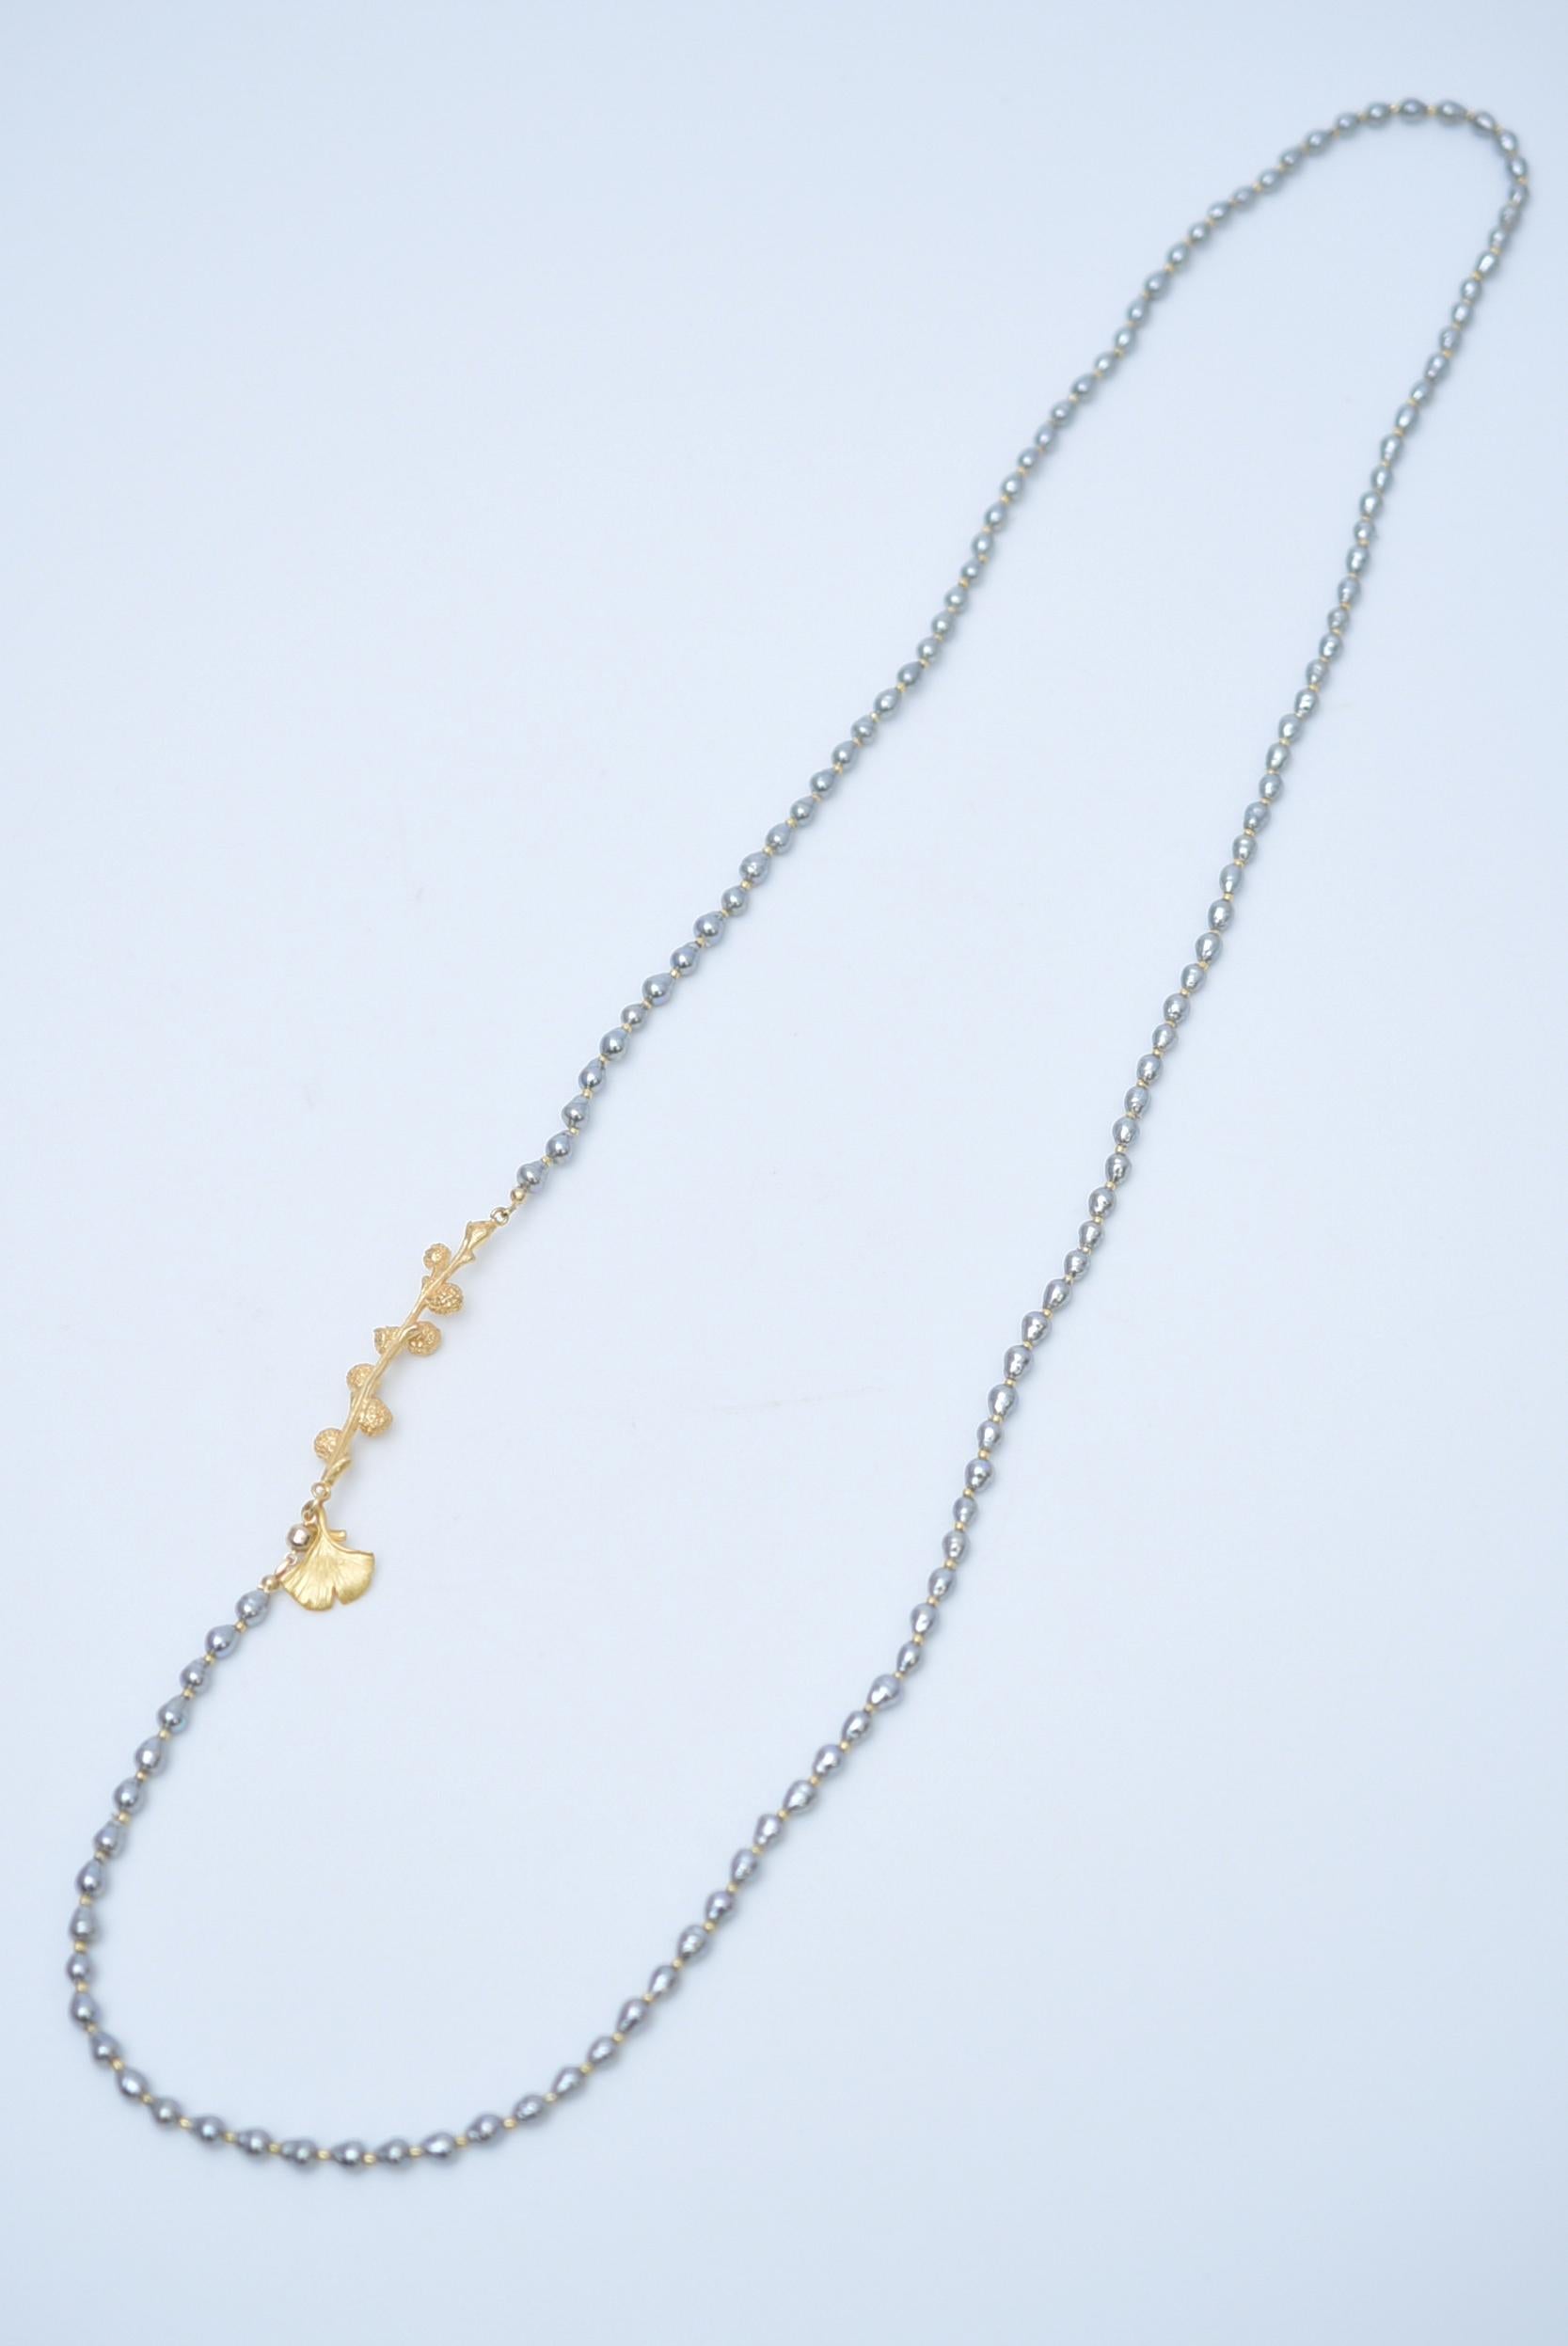 Matière : Laiton, perles de verre japonaises vintage des années 1970, perles de verre, aimant.
taille:environ 86cm

Sautoir avec des perles japonaises vintage des années 1970 dans des tons gris calmes.
L'or dans la saveur douce ajoute une touche de